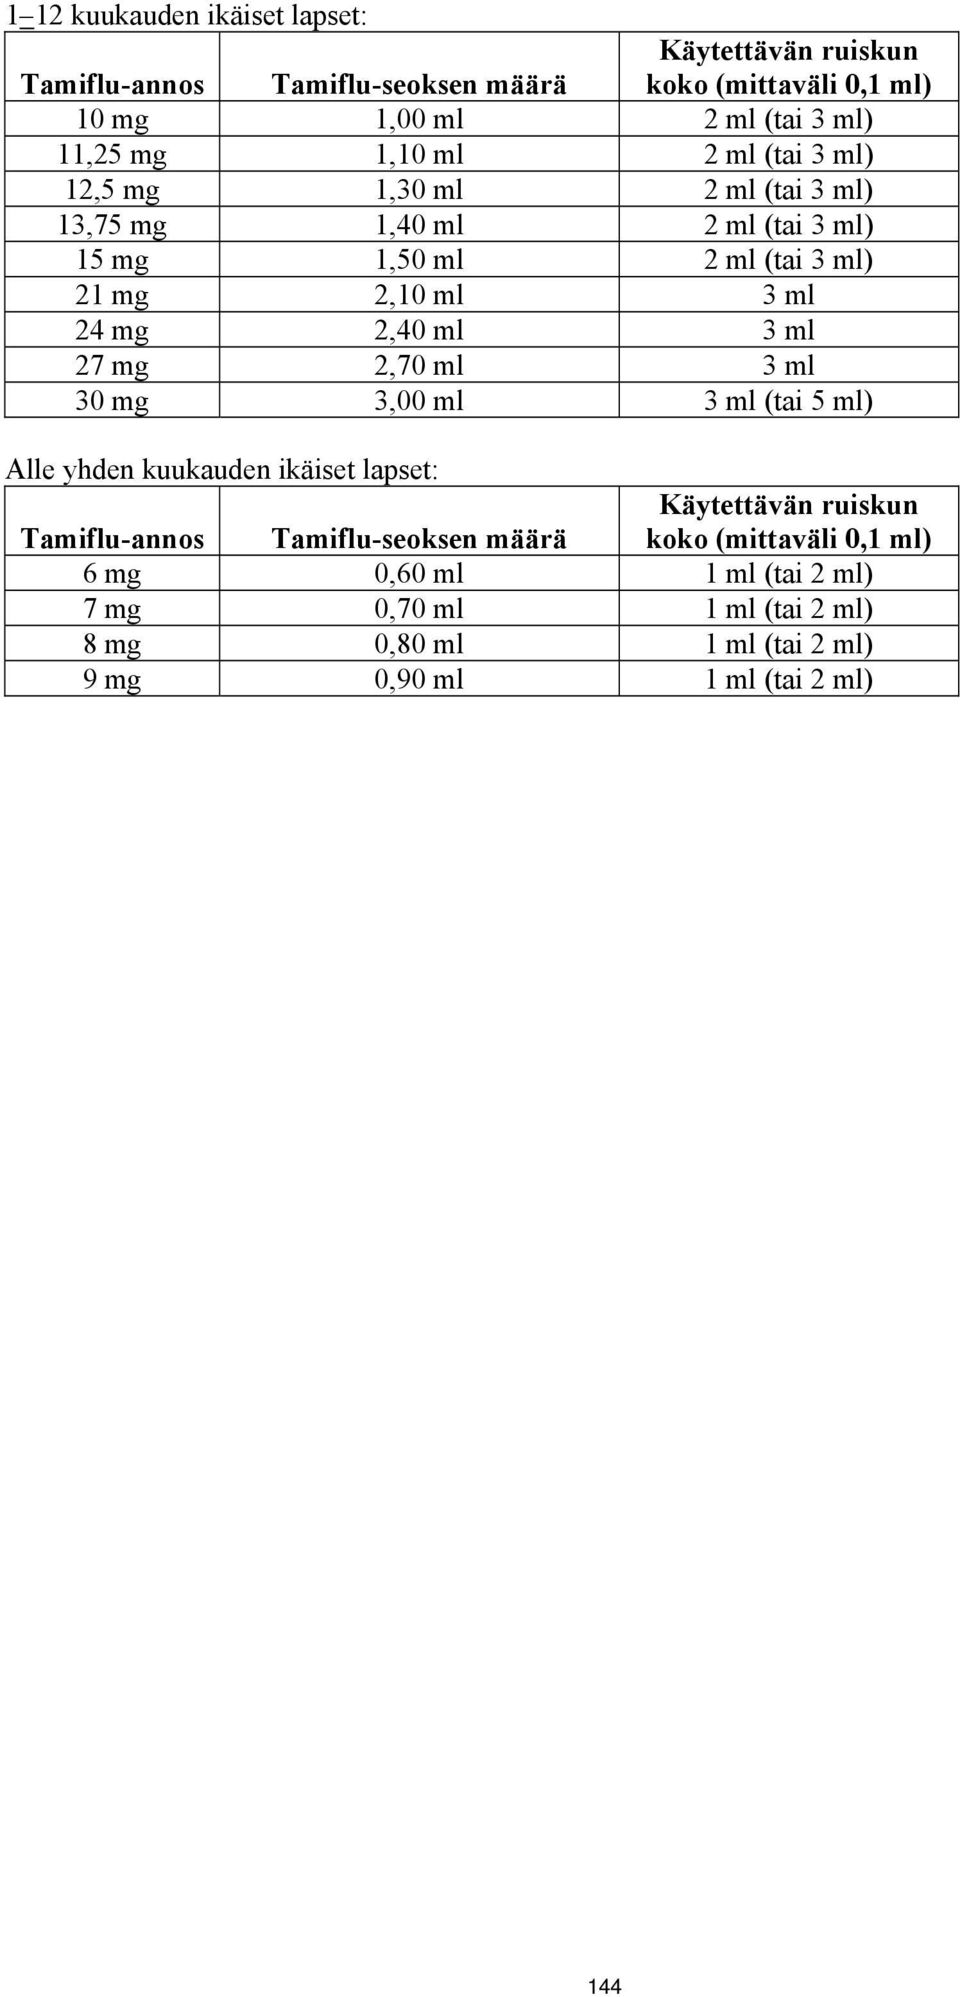 2,40 ml 3 ml 27 mg 2,70 ml 3 ml 30 mg 3,00 ml 3 ml (tai 5 ml) Alle yhden kuukauden ikäiset lapset: Tamiflu-annos Tamiflu-seoksen määrä Käytettävän